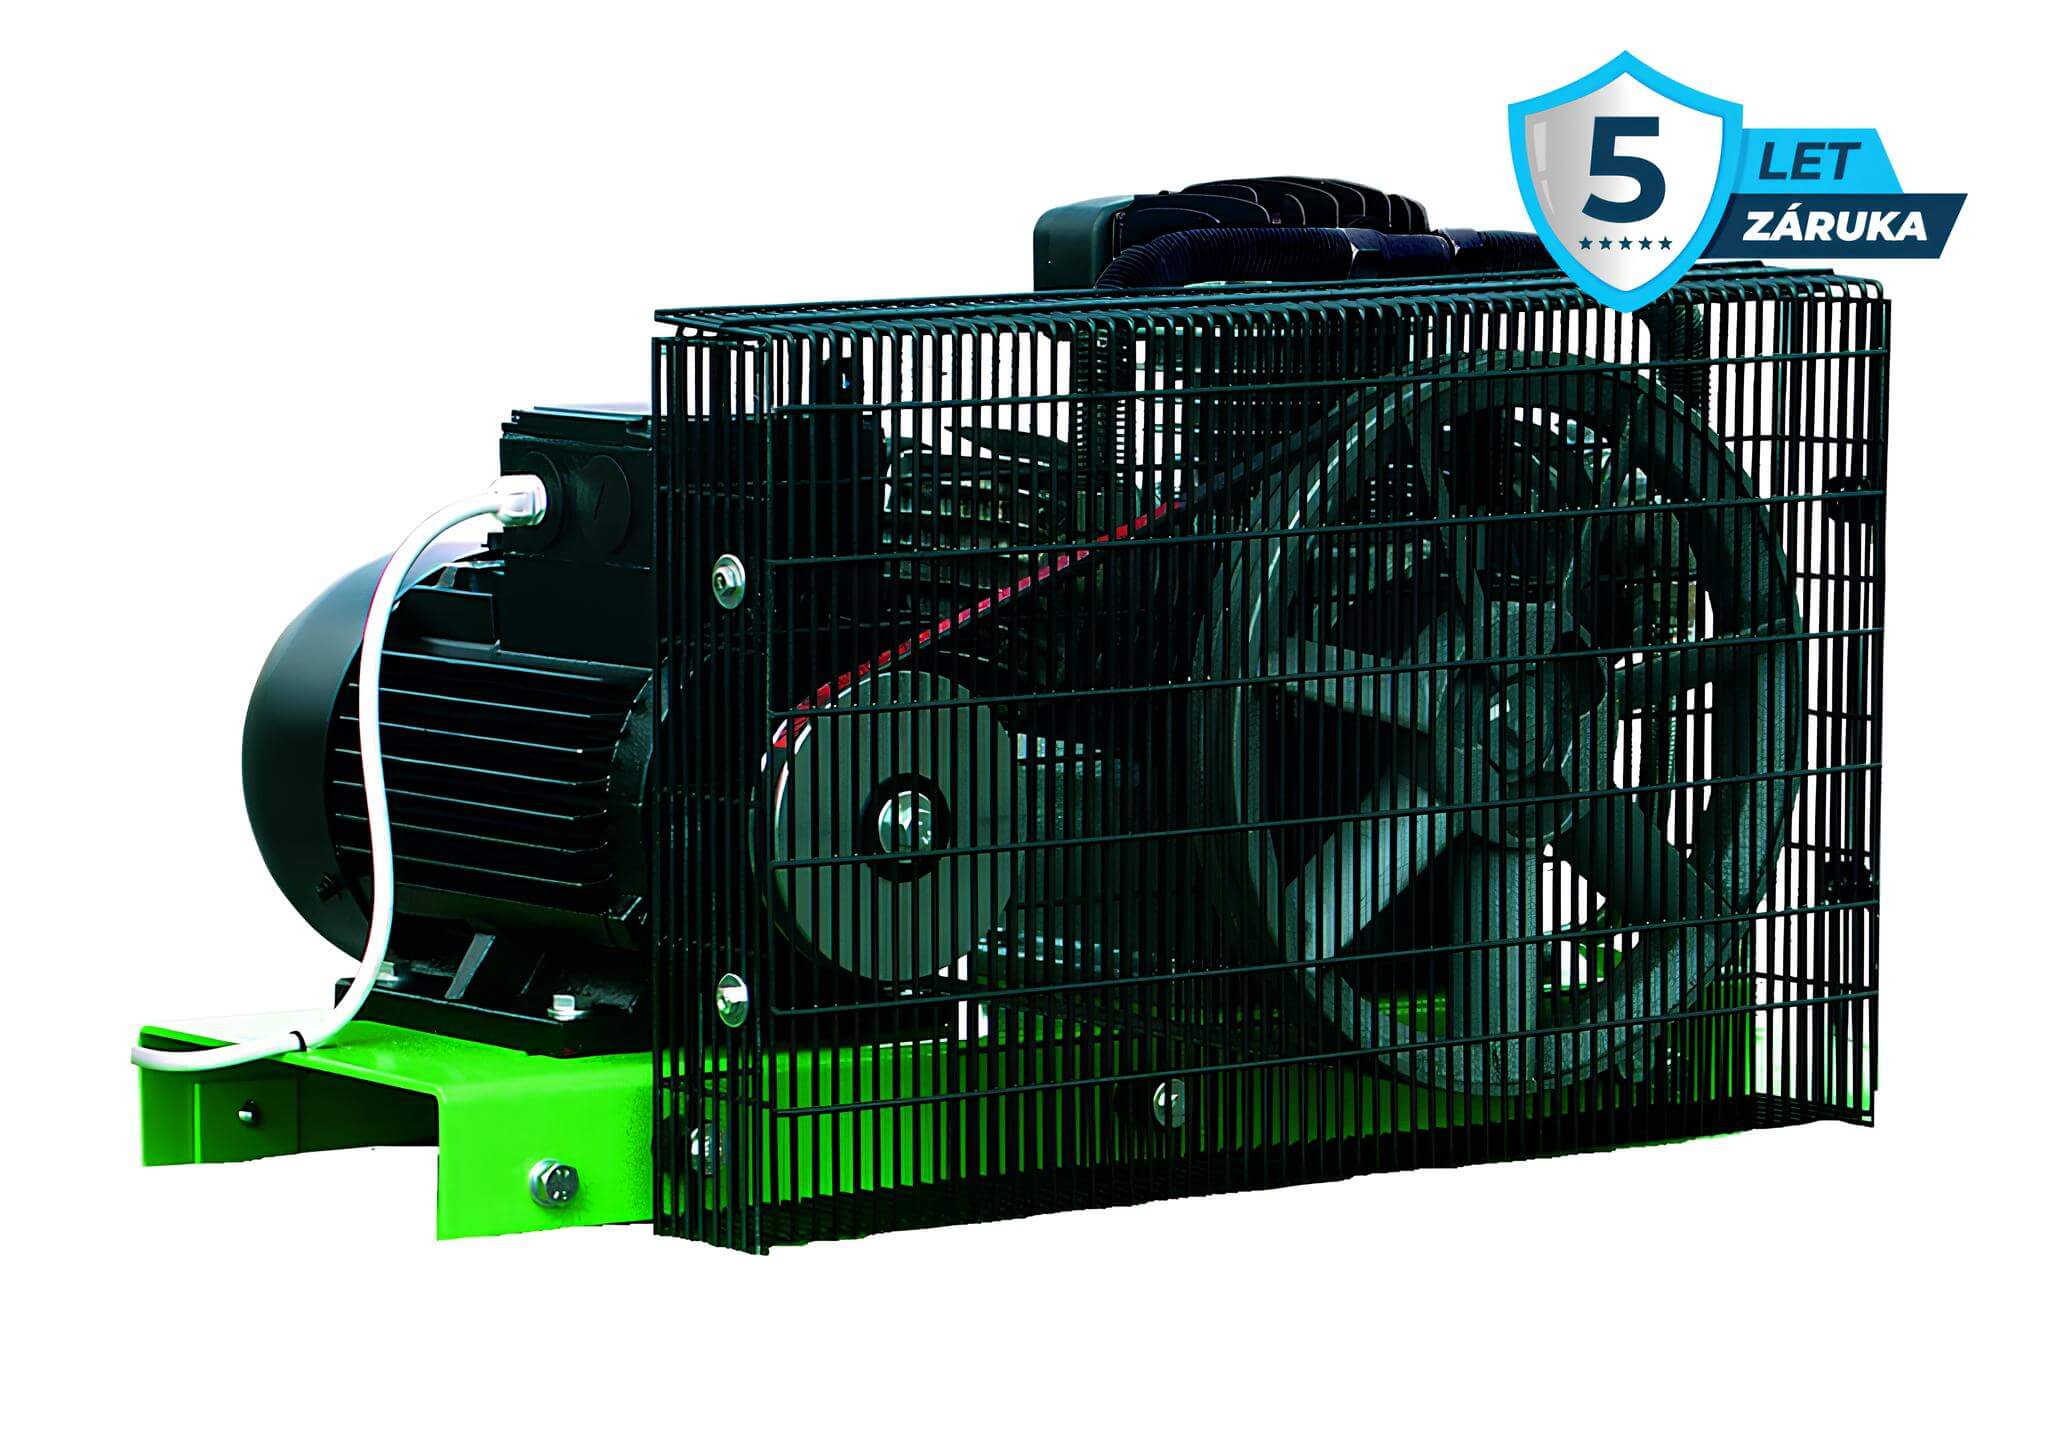 Atmos Pístový kompresor Perfect - 4TPFT příkon 4,0 kW, výkon 500 l/min, tlak 12,5 bar, vzdušník 300 l, napětí 400/50 V/Hz